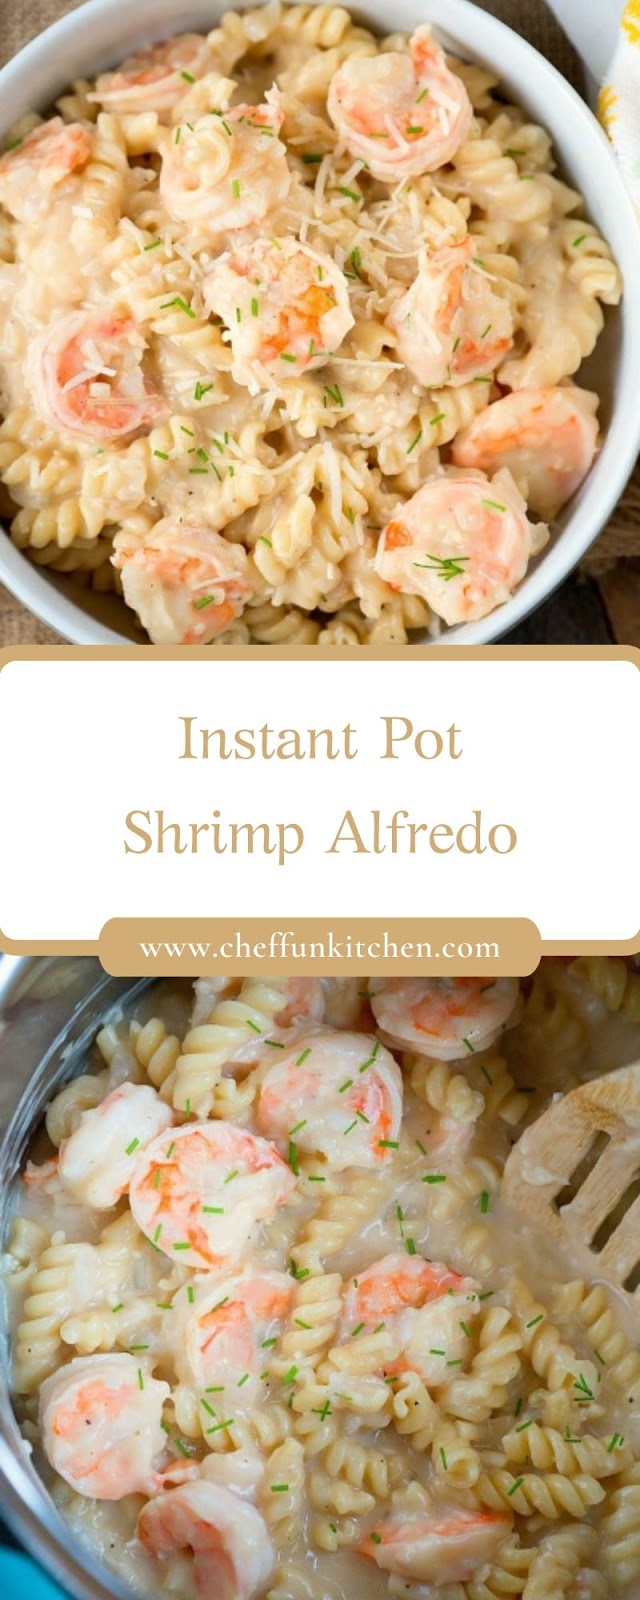 Instant Pot Shrimp Alfredo